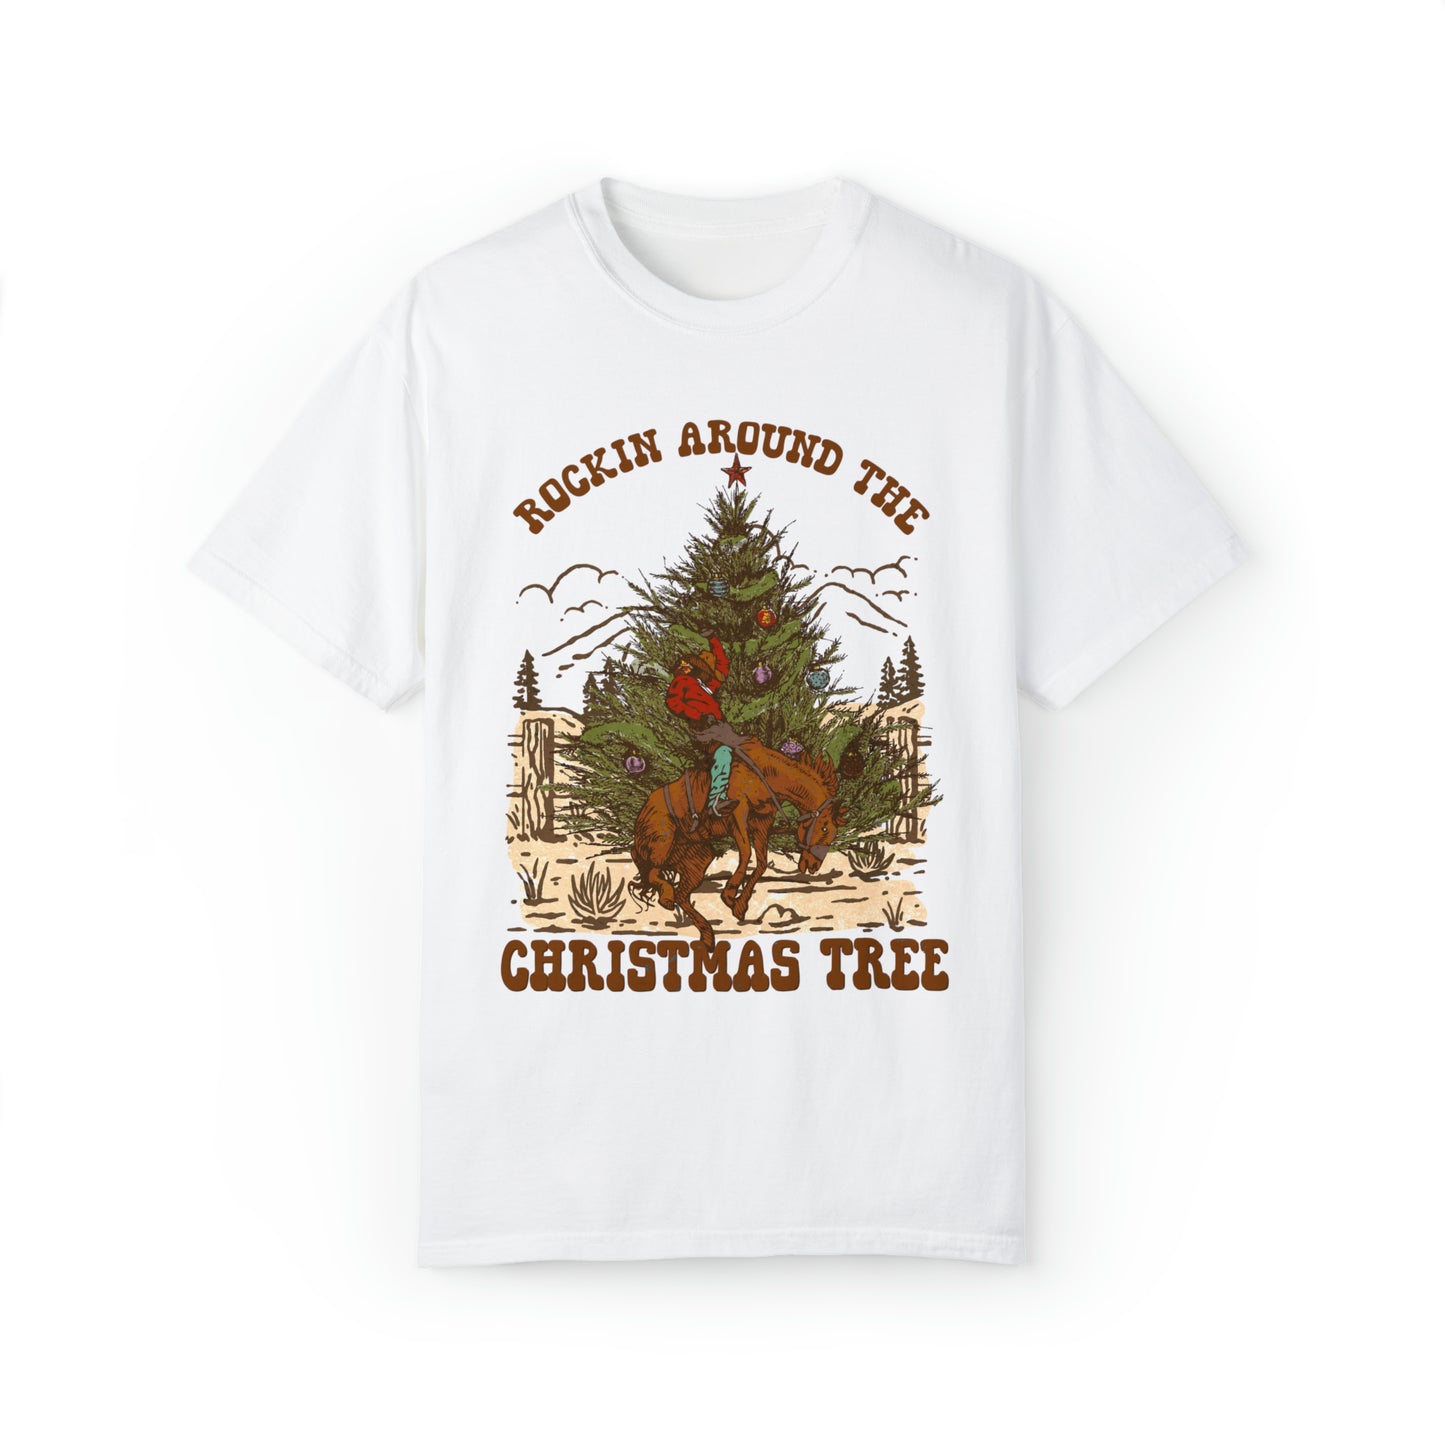 Rockin Around The Christmas Tree Shirt